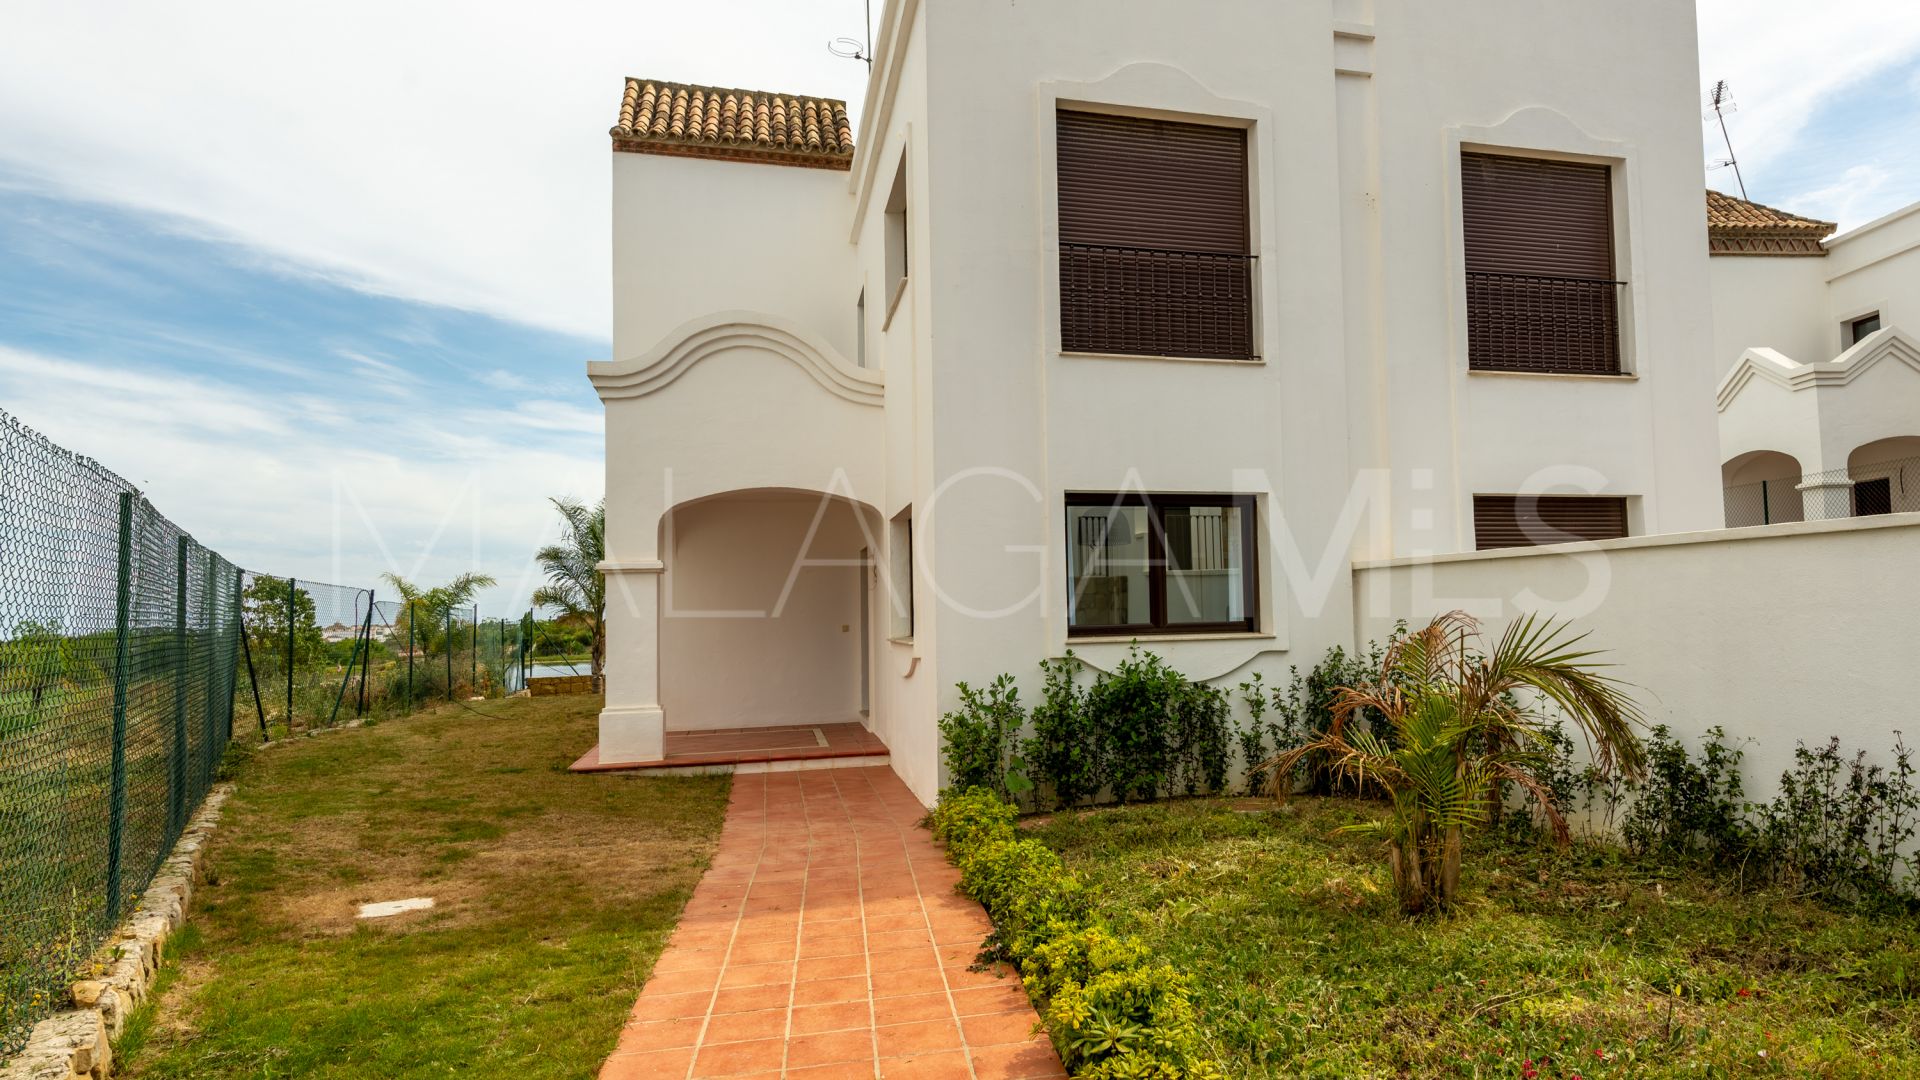 For sale semi detached villa in Arroyo Vaquero